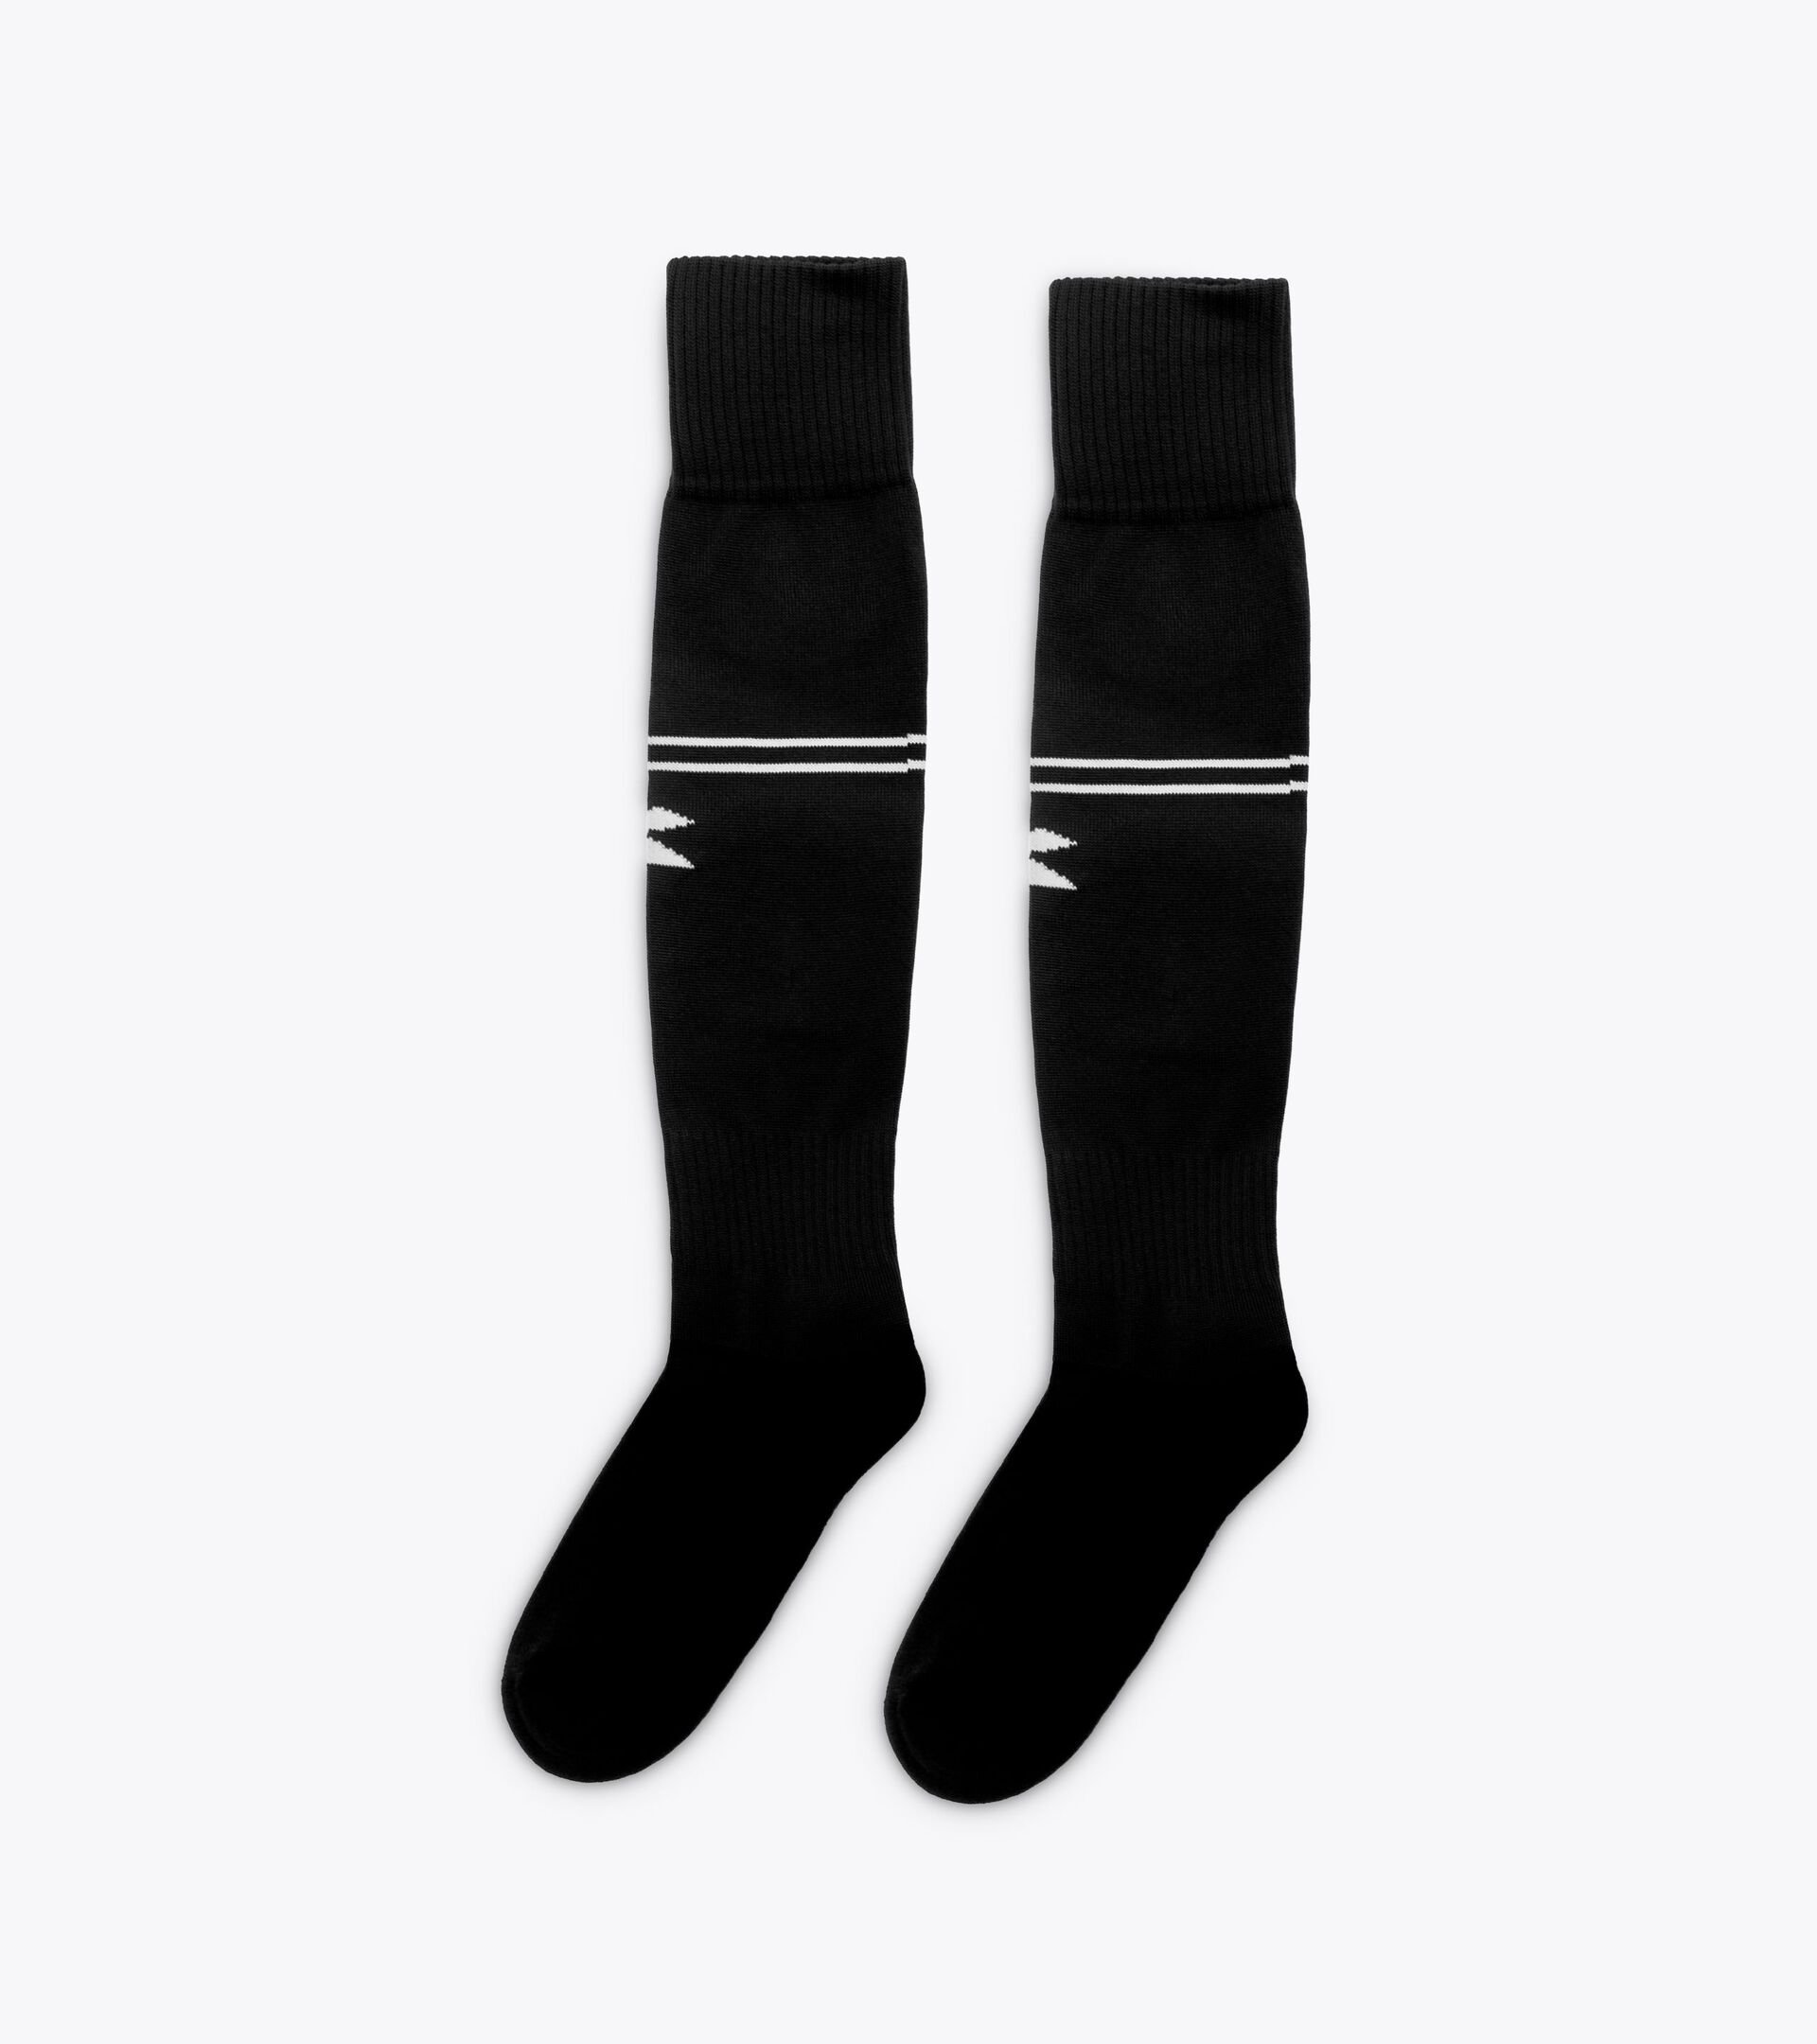 Calcio socks SOCKS SCUDETTO BLACK - Diadora